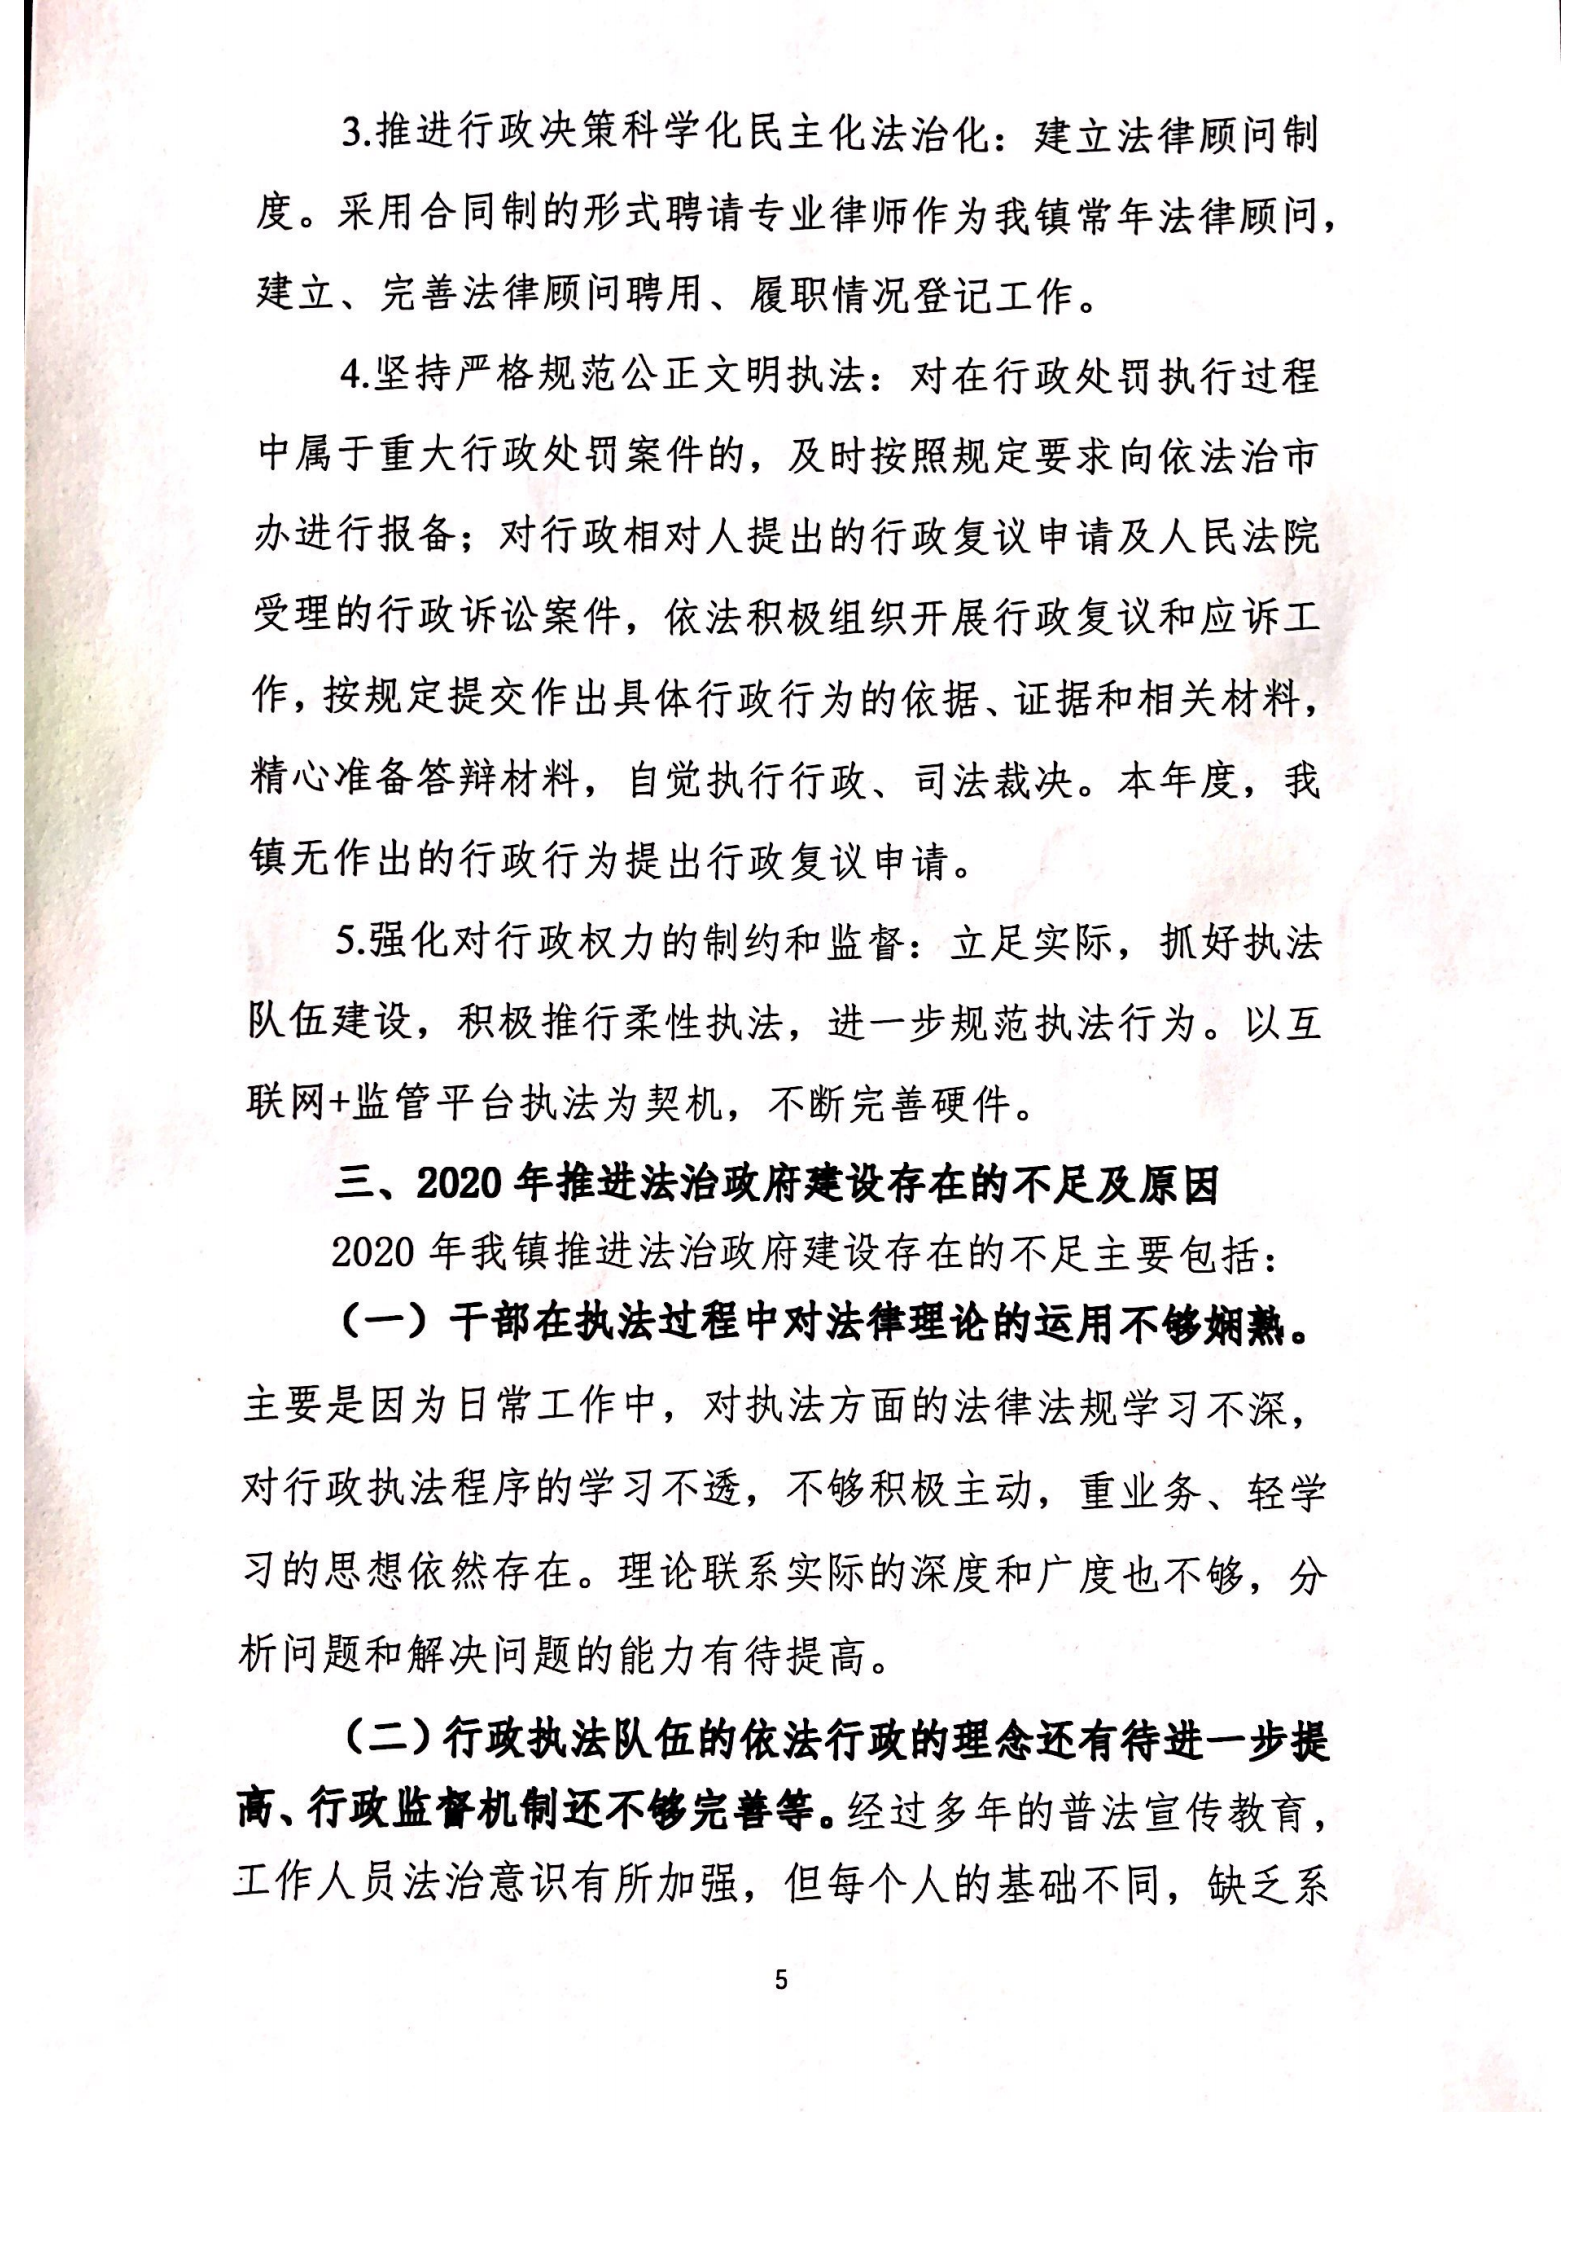 潭西镇人民政府2020年度法治报告1_04.png